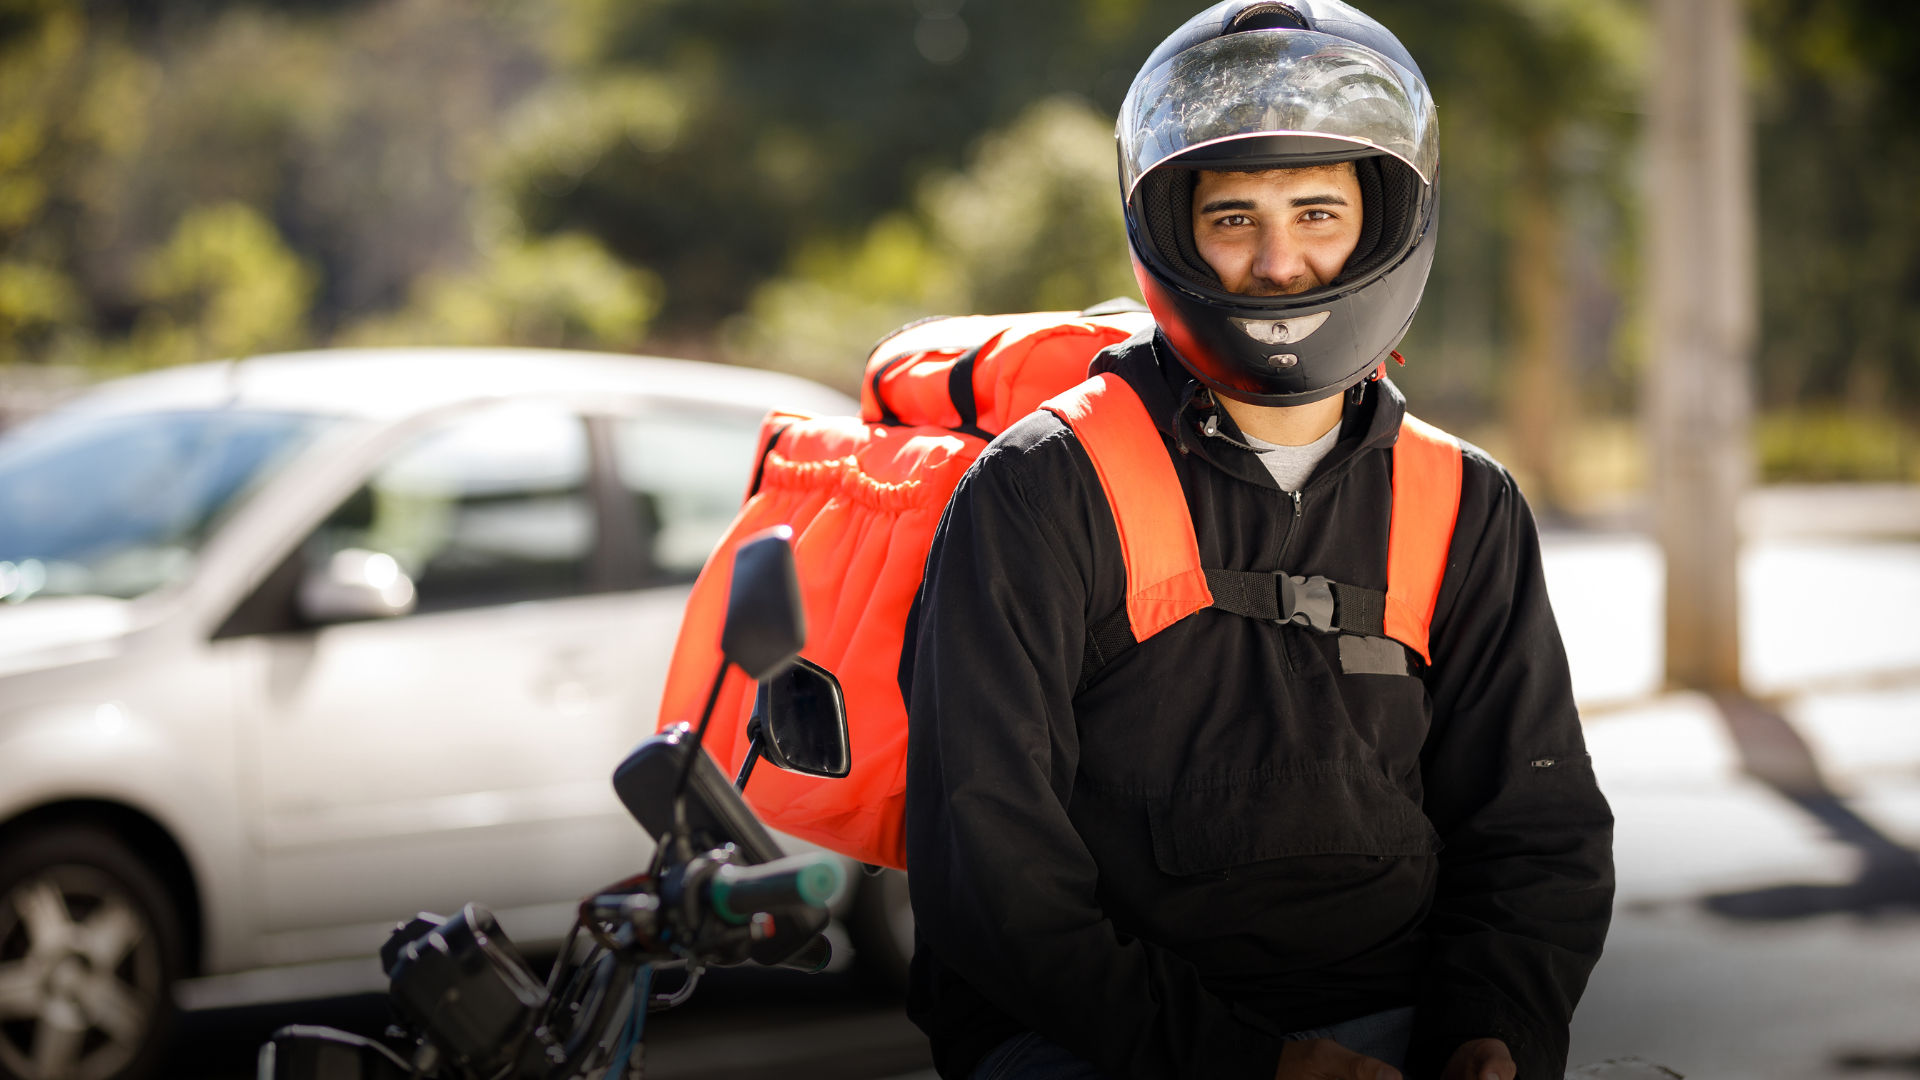 Motoboy com casaco preto e capacete preto, está com uma bag laranja.